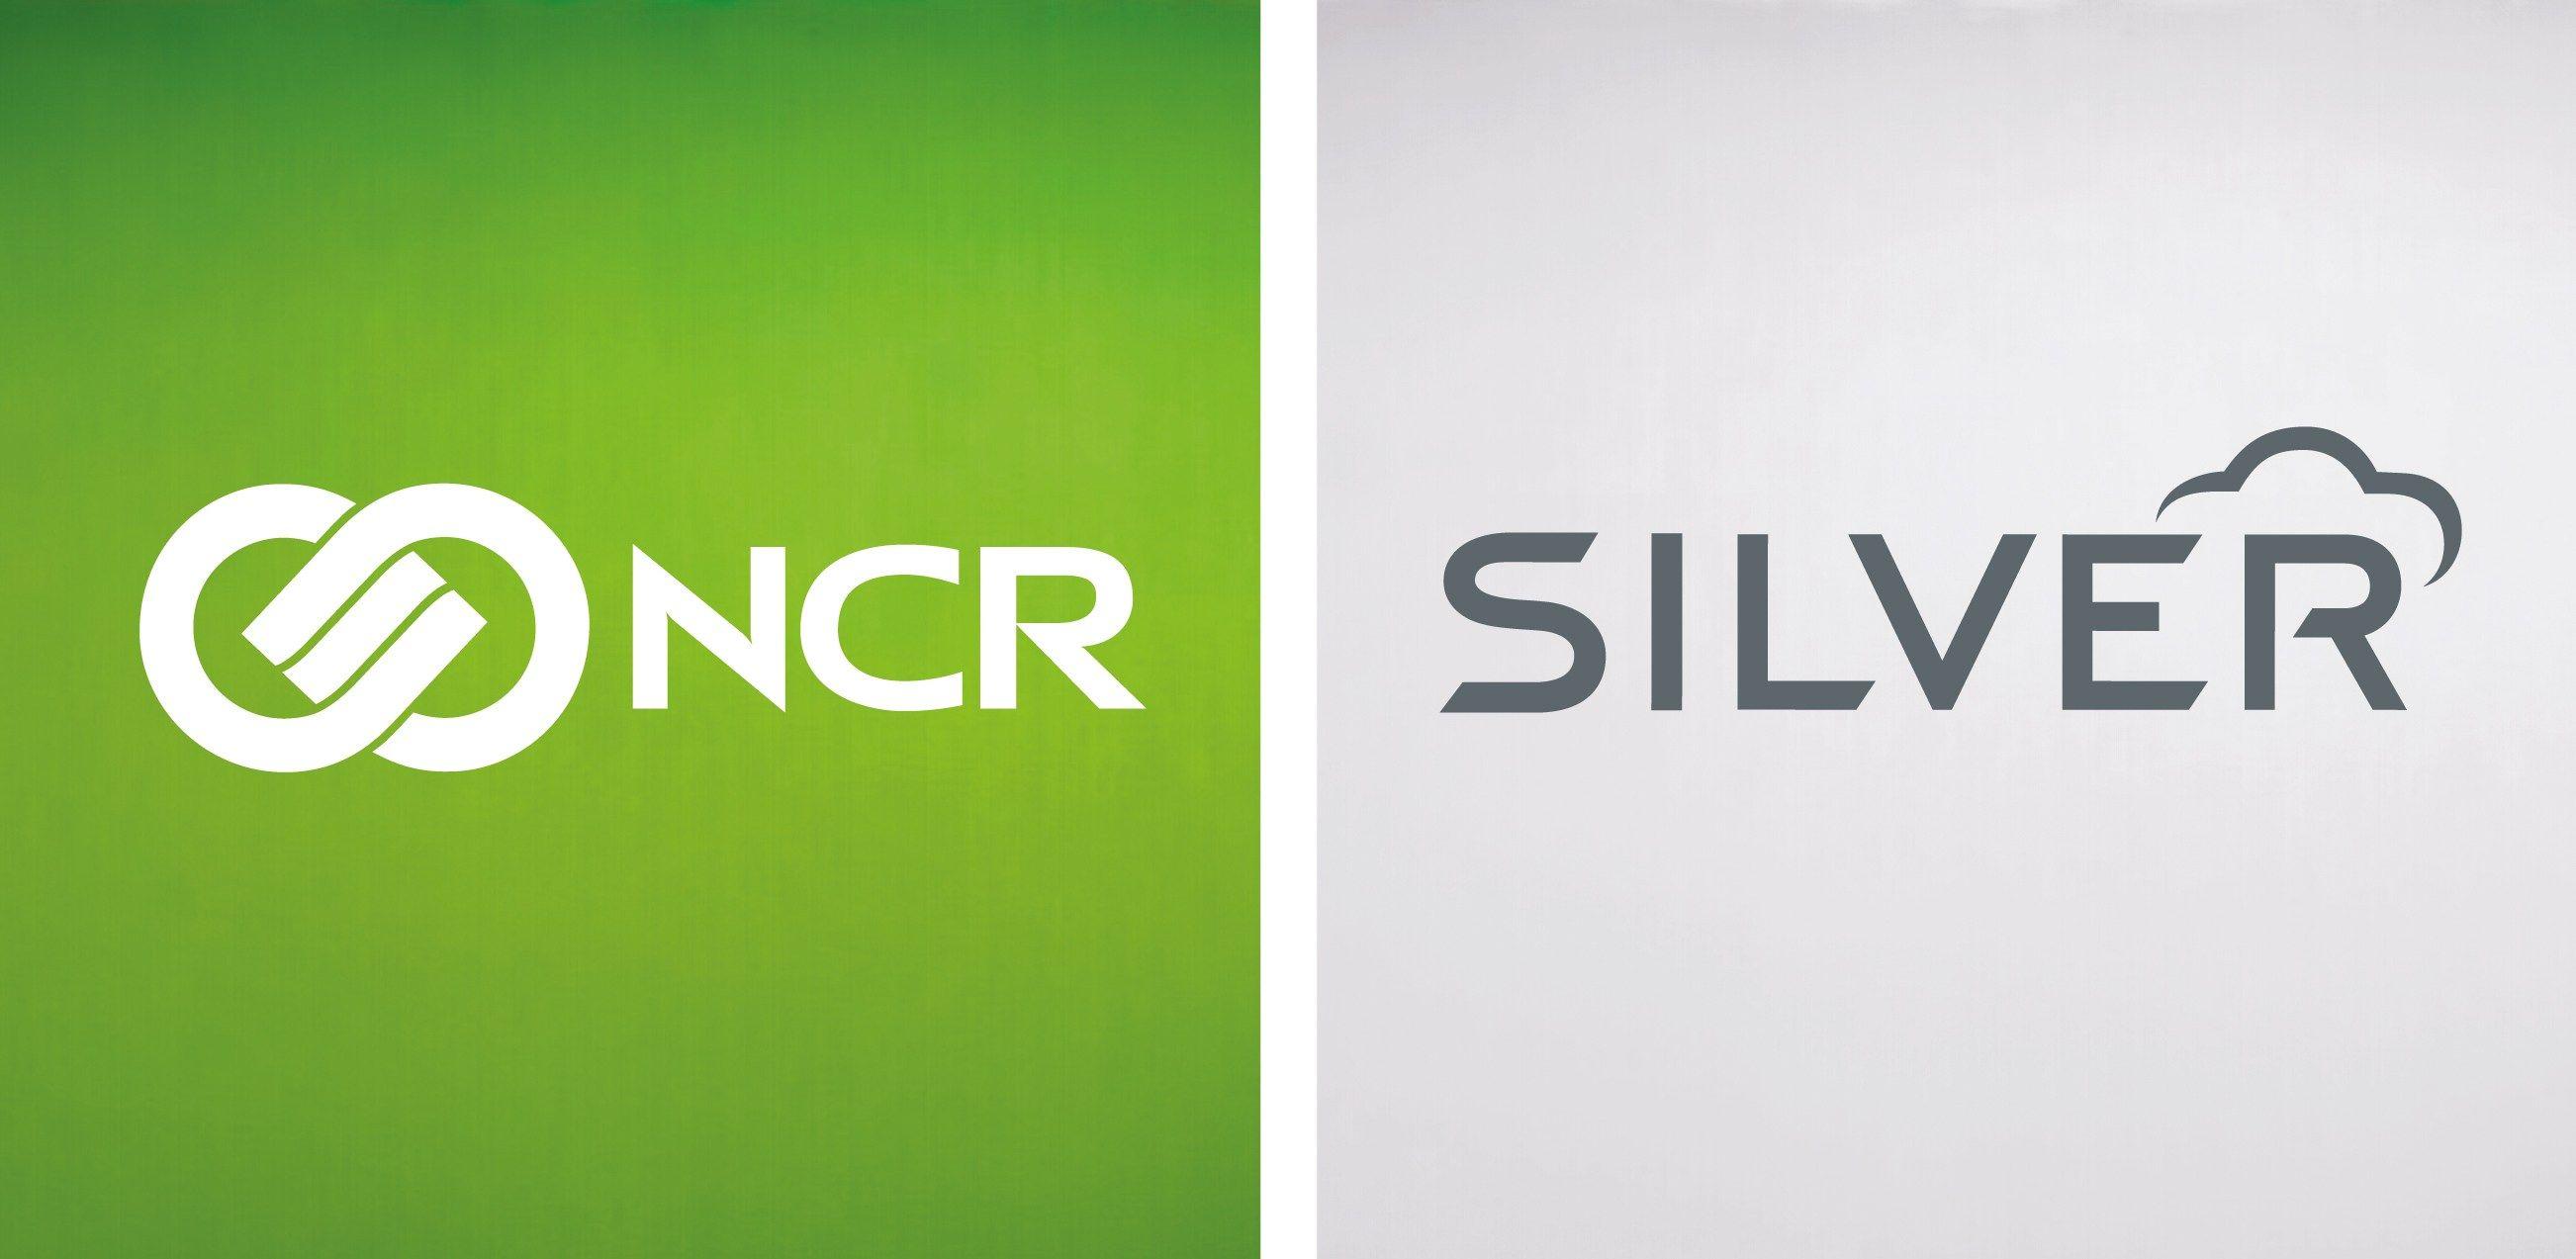 Silver Green Logo - Ncr Silver Logo. New York Computer Help